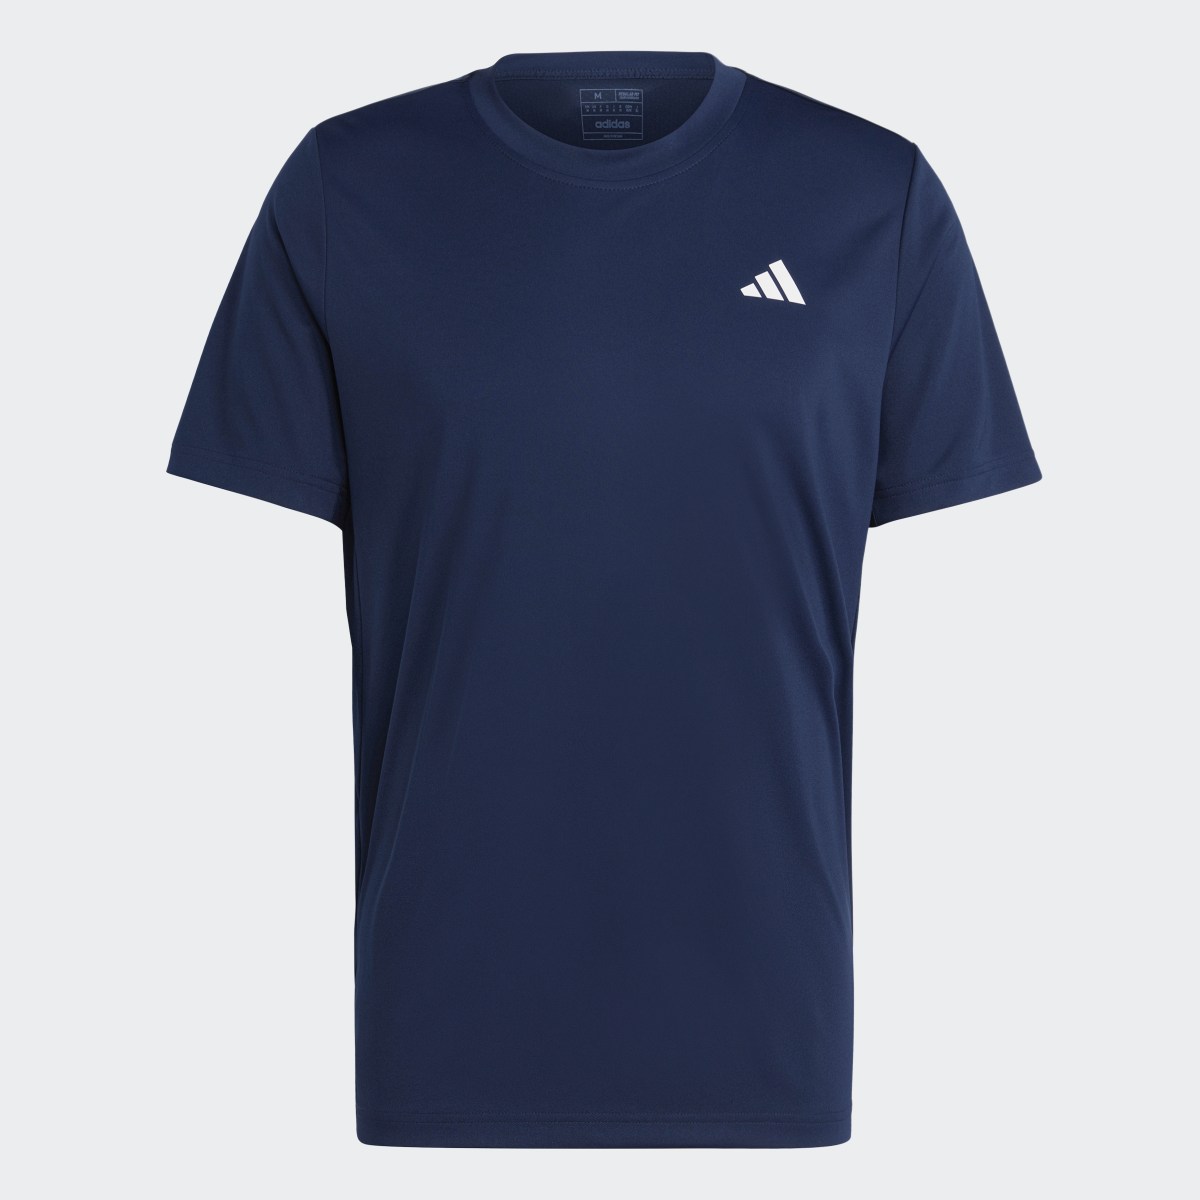 Adidas T-shirt Club Tennis. 5